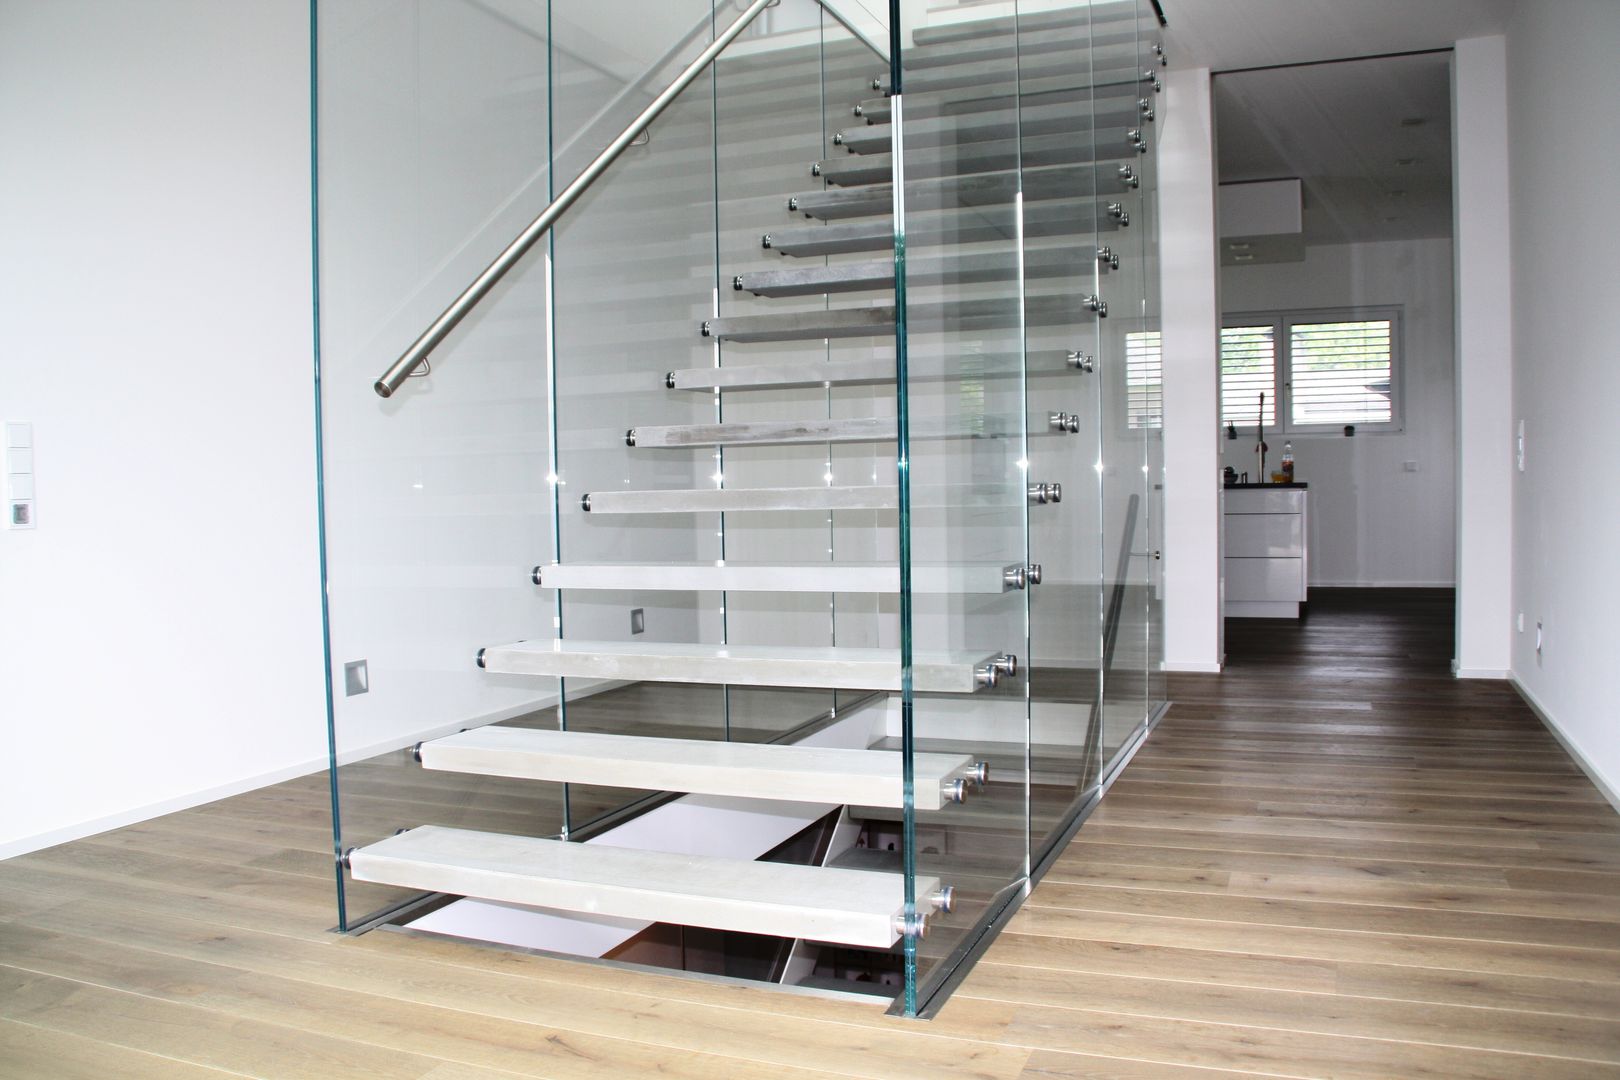 Glastragende Treppe mit Betondesignstufen, lifestyle-treppen.de lifestyle-treppen.de Коридор Бетон